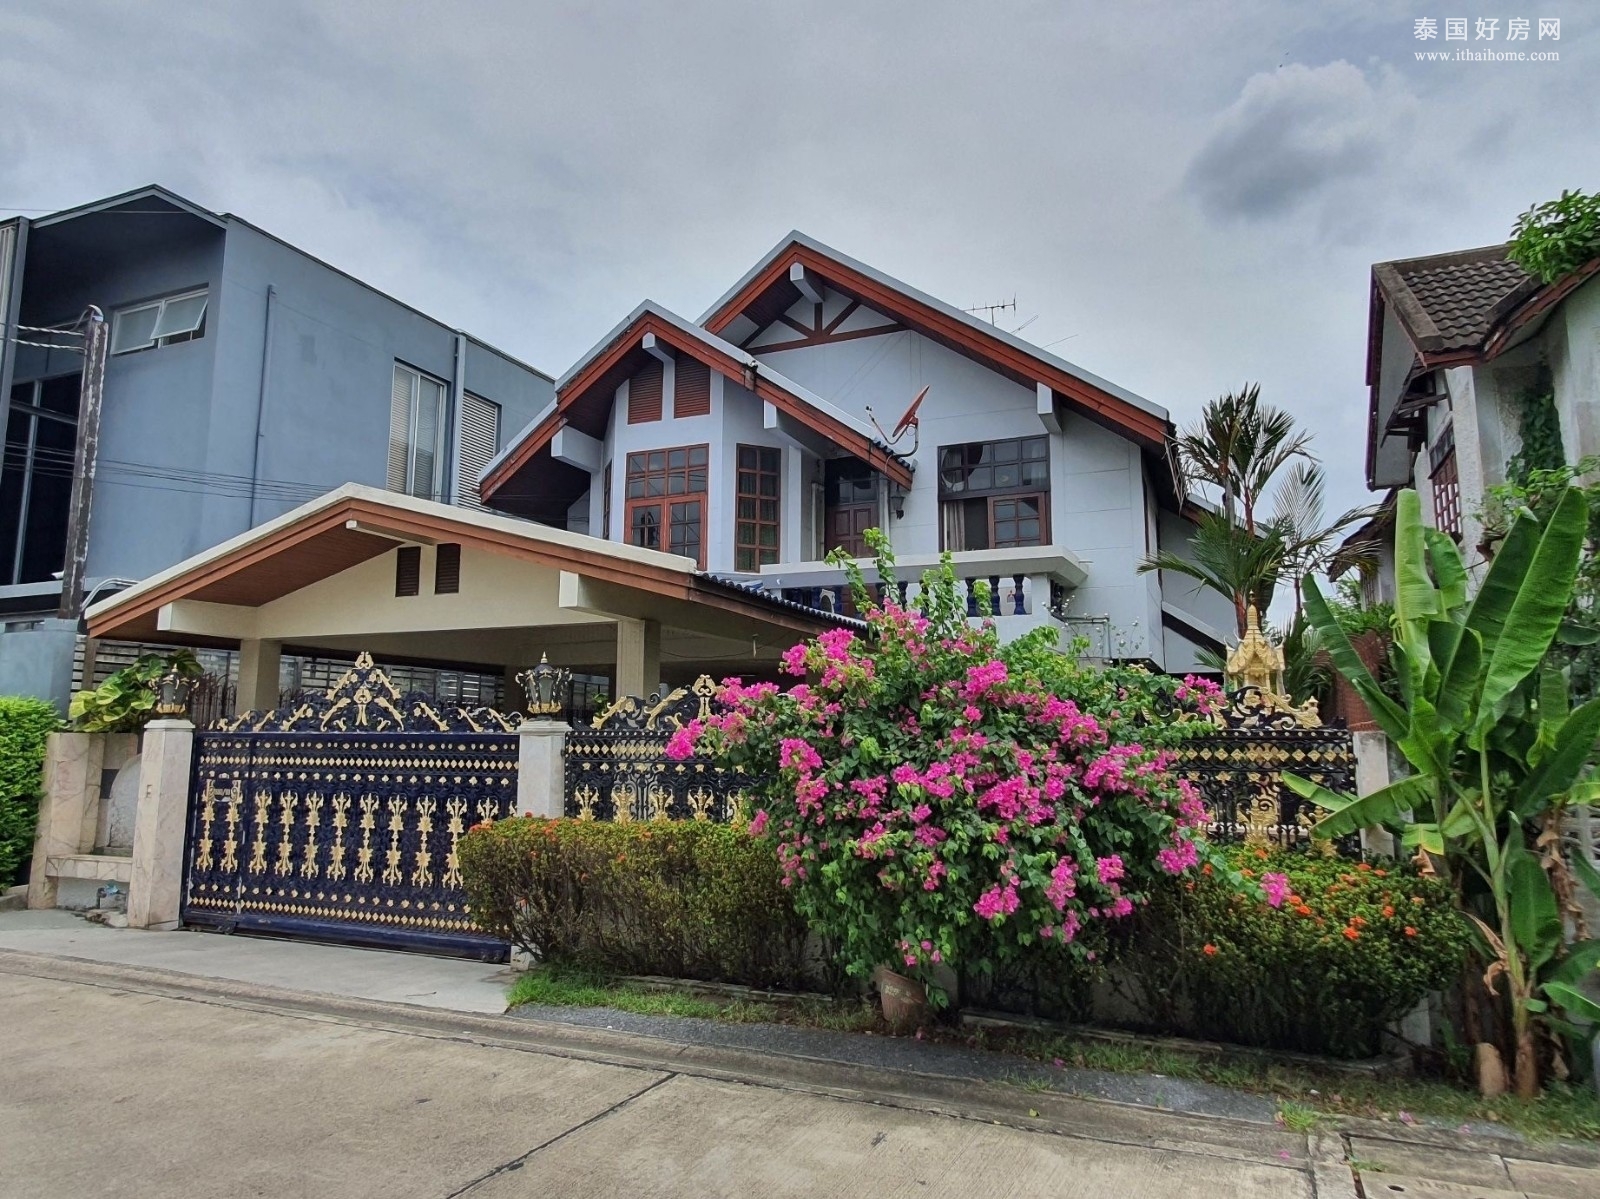 汇权区 | Soi Pracharat Bamphen 28 独栋别墅出售 3卧 240平米 1133万泰铢